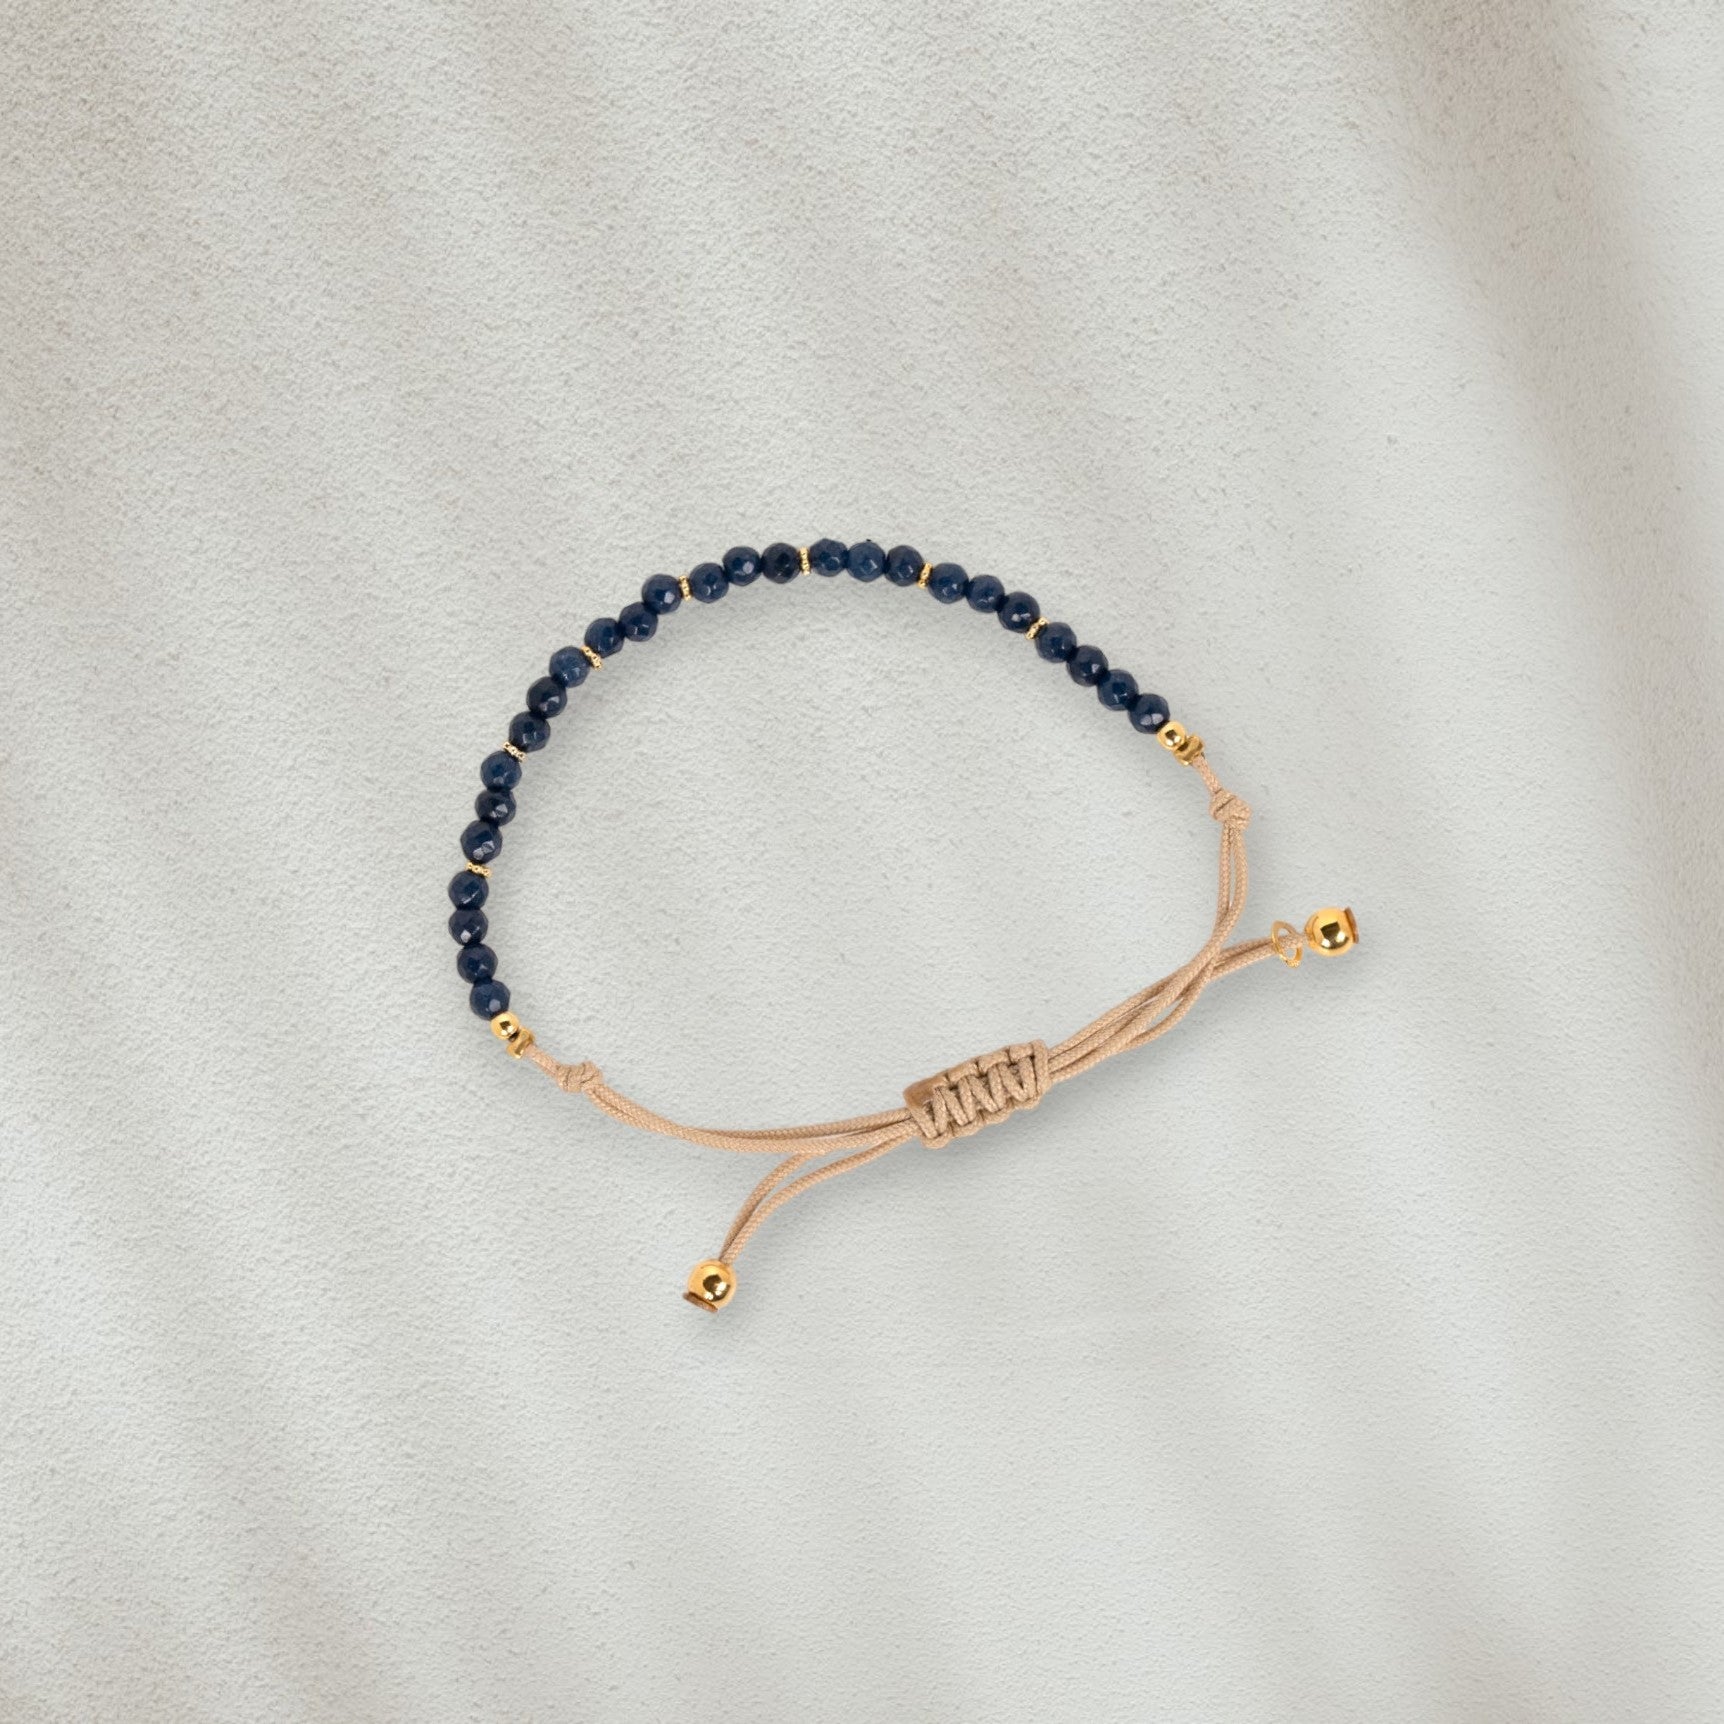 Bracelet en coton beige avec des pierres bleues marines posé sur du sable